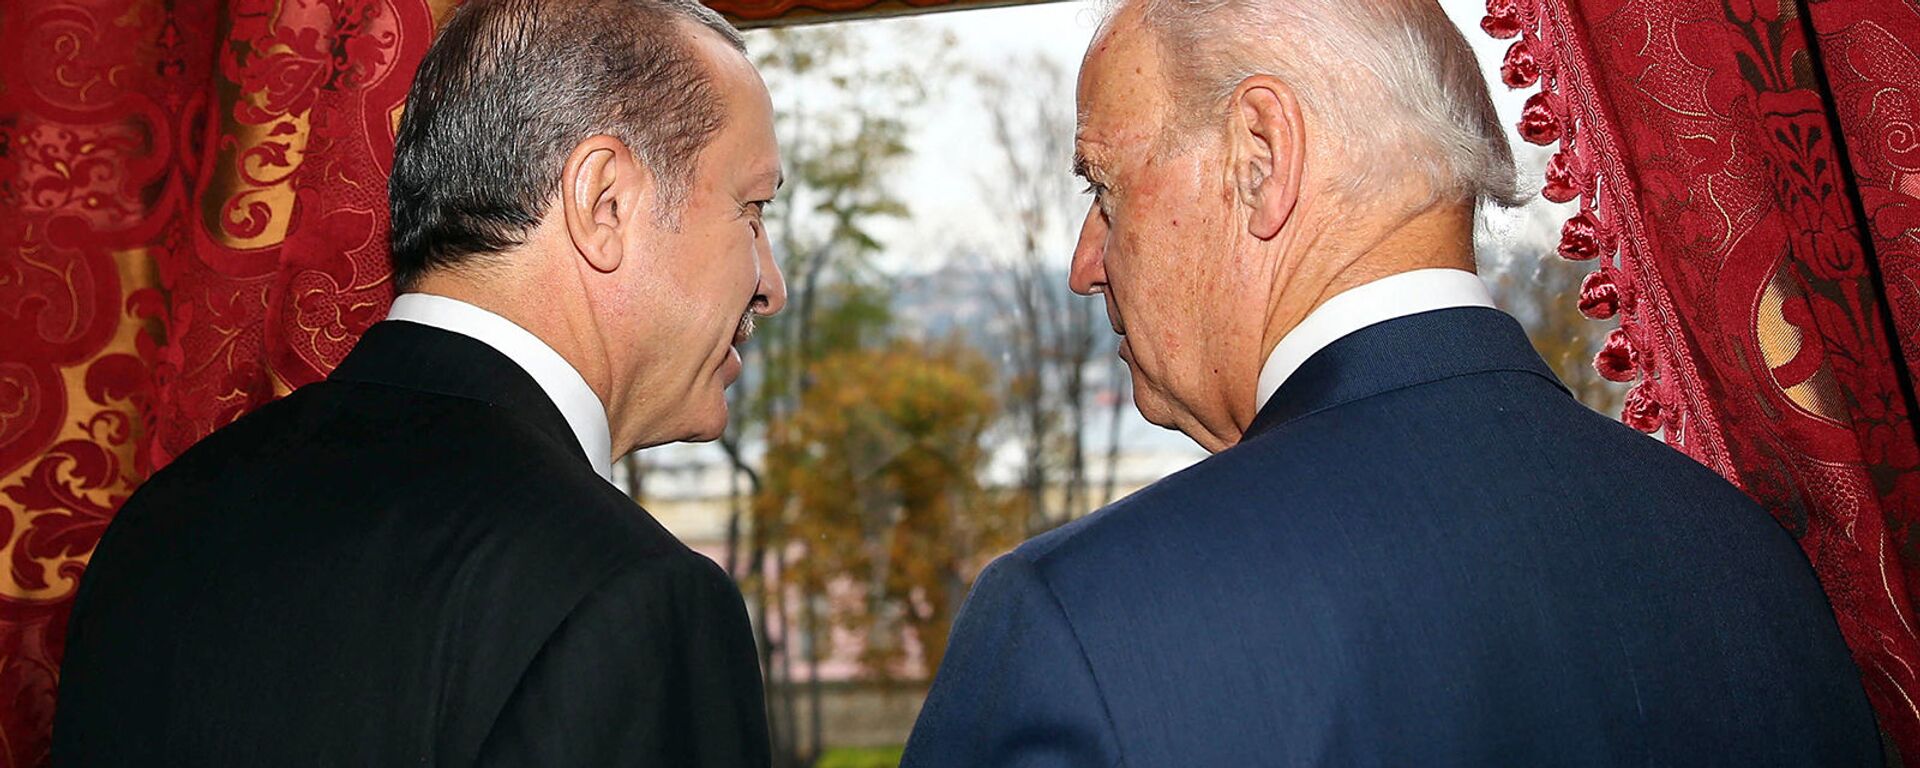 Беседа вице-президента США Джо Байдена с президентом Турции Реджепом Эрдоганом во дворце Бейлербейи (22 ноября 2014).  Стамбул - Sputnik Армения, 1920, 01.05.2021